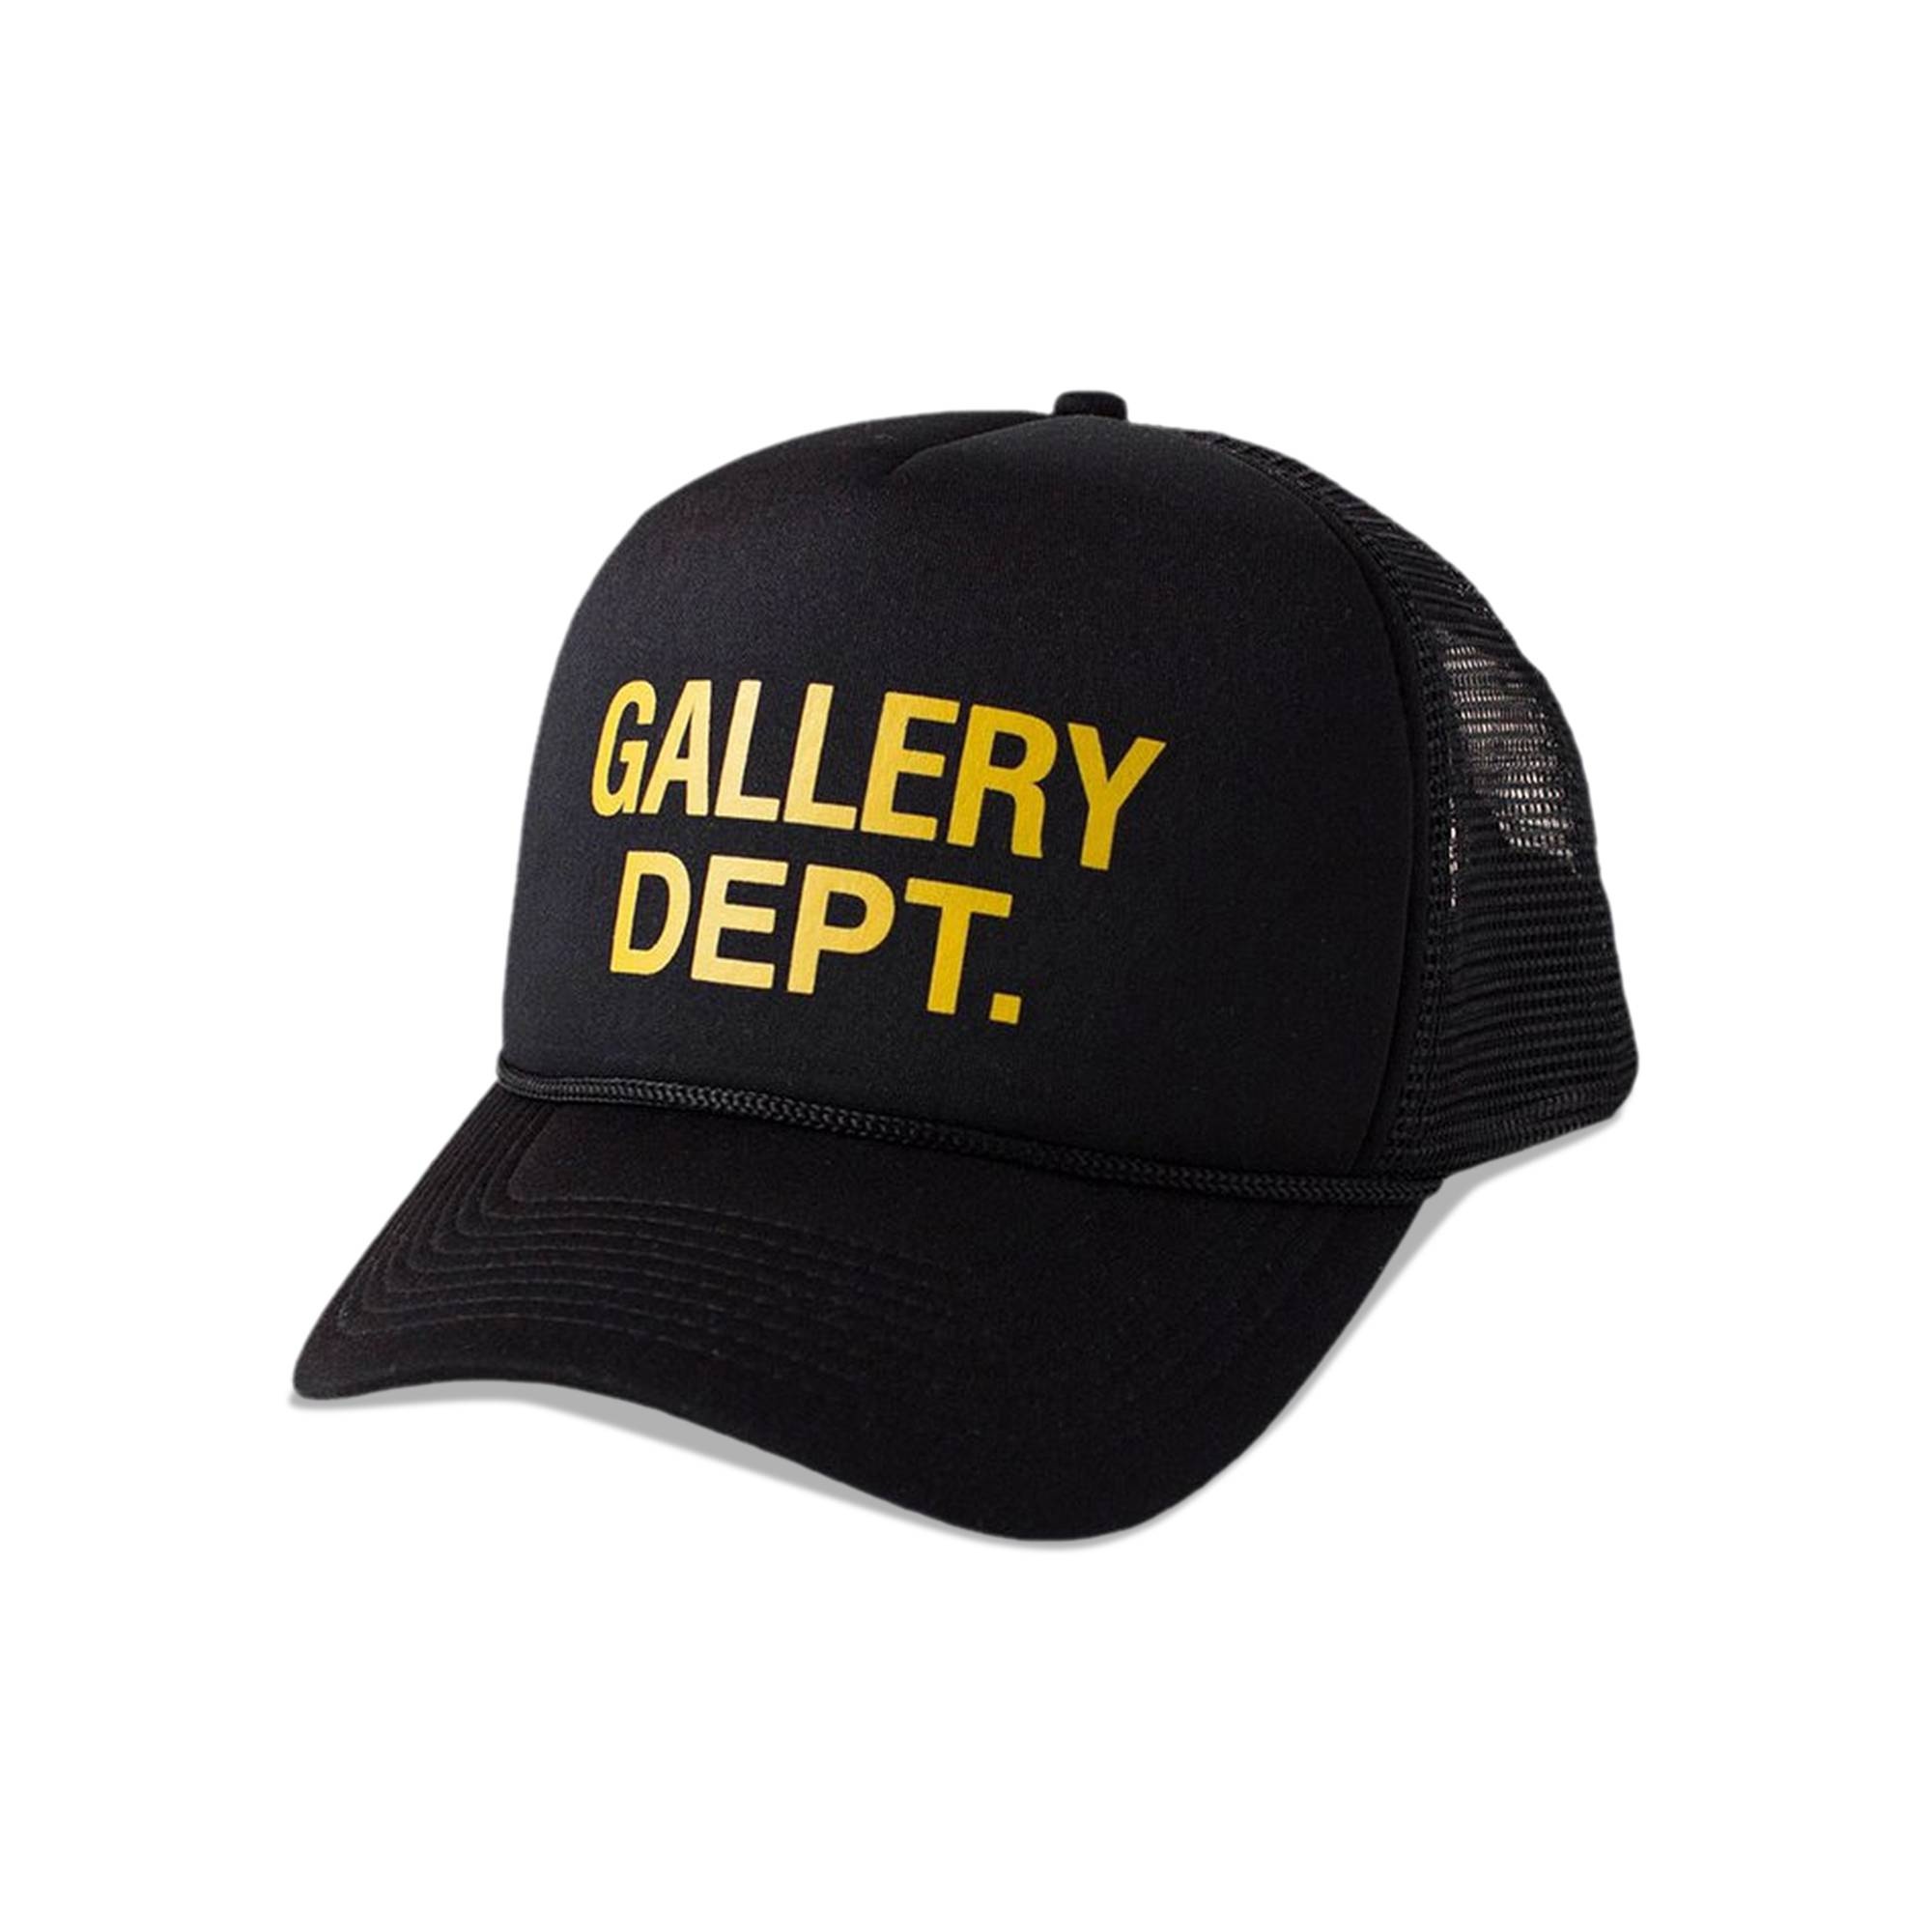 Gallery Dept. Trucker Cap 'Black' - 1